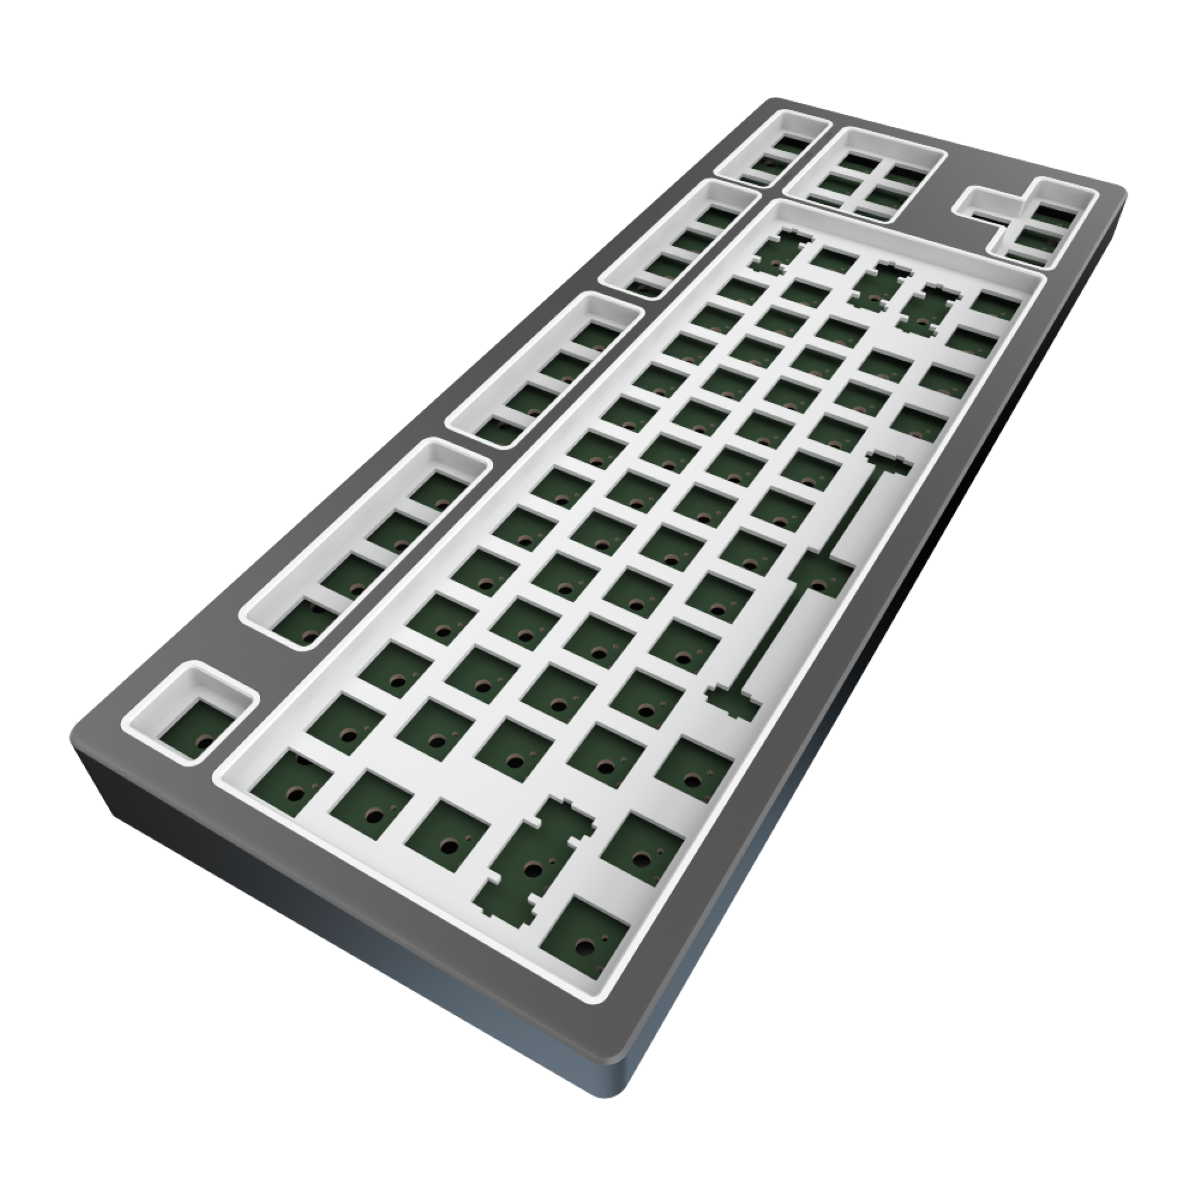 - Aluminum Barebones, LTD PROJECT Mechanisch Tastatur, Grey Gaming DARK KD87B